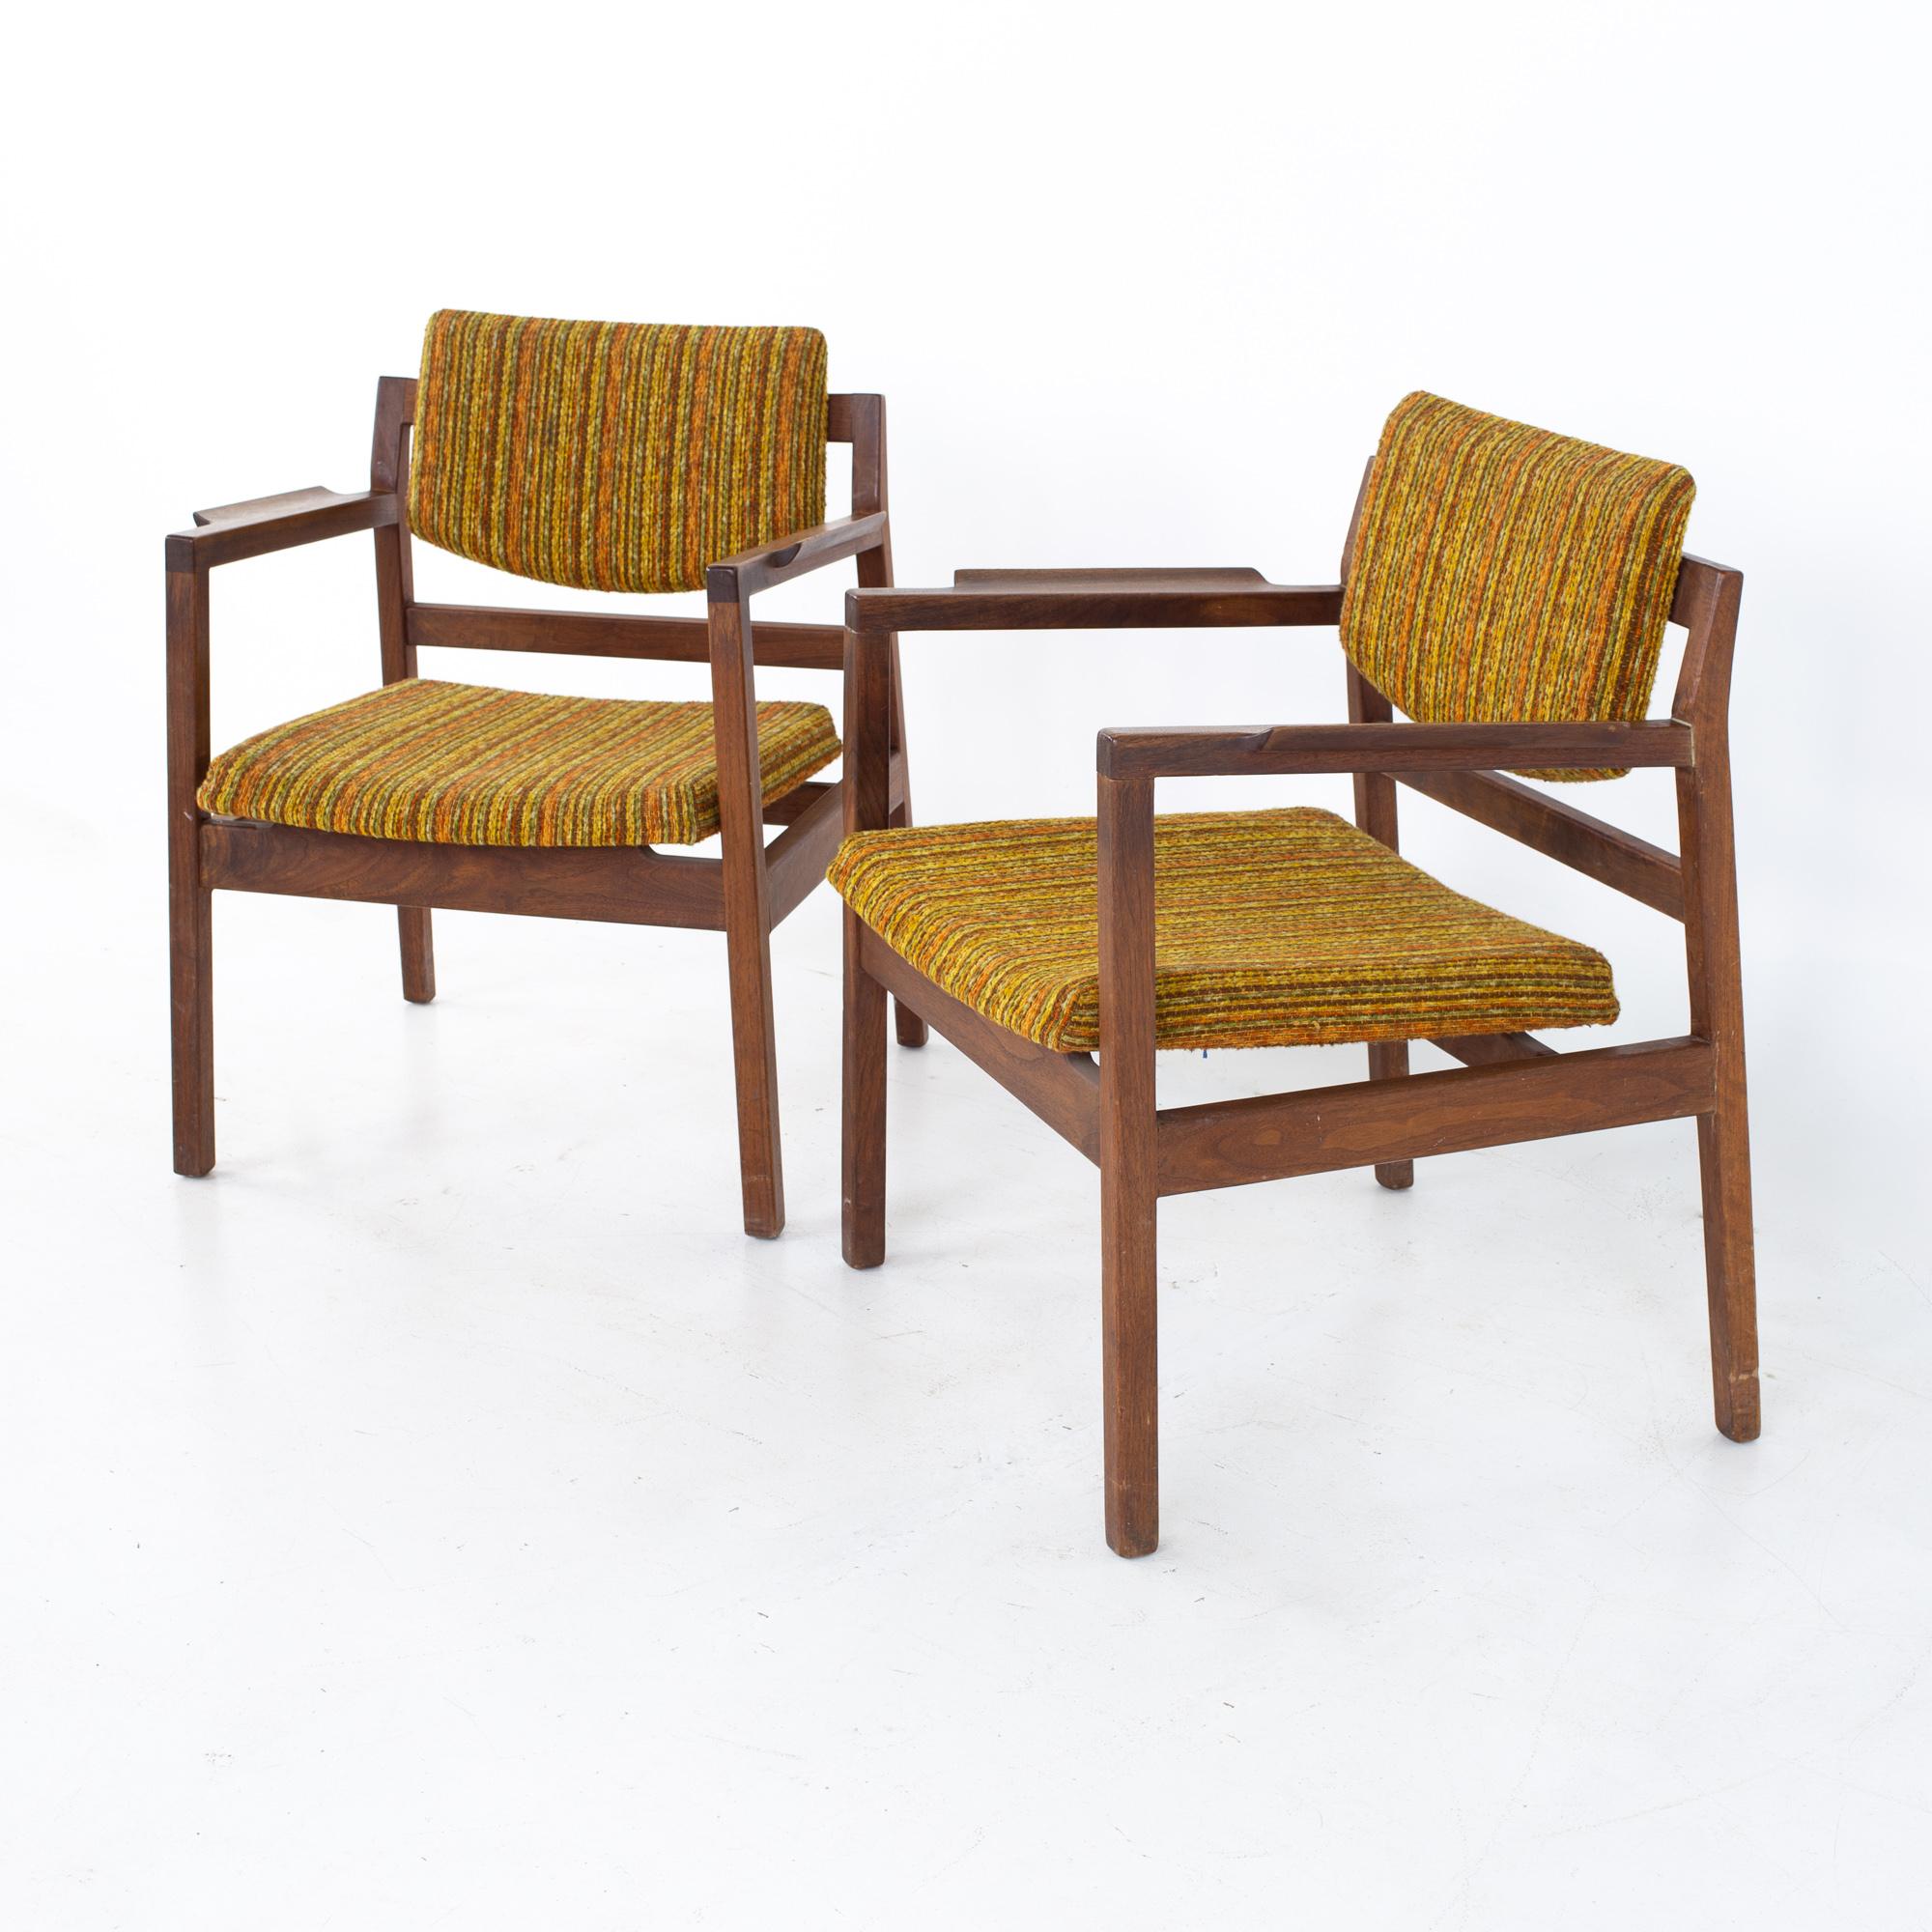 Jens Risom Sessel aus der Mitte des Jahrhunderts - ein Paar
Jeder Stuhl misst: 24 breit x 23 tief x 31 hoch, mit einer Sitzhöhe von 19,5 Zoll

Alle Möbelstücke sind in einem so genannten restaurierten Vintage-Zustand zu haben. Das bedeutet, dass